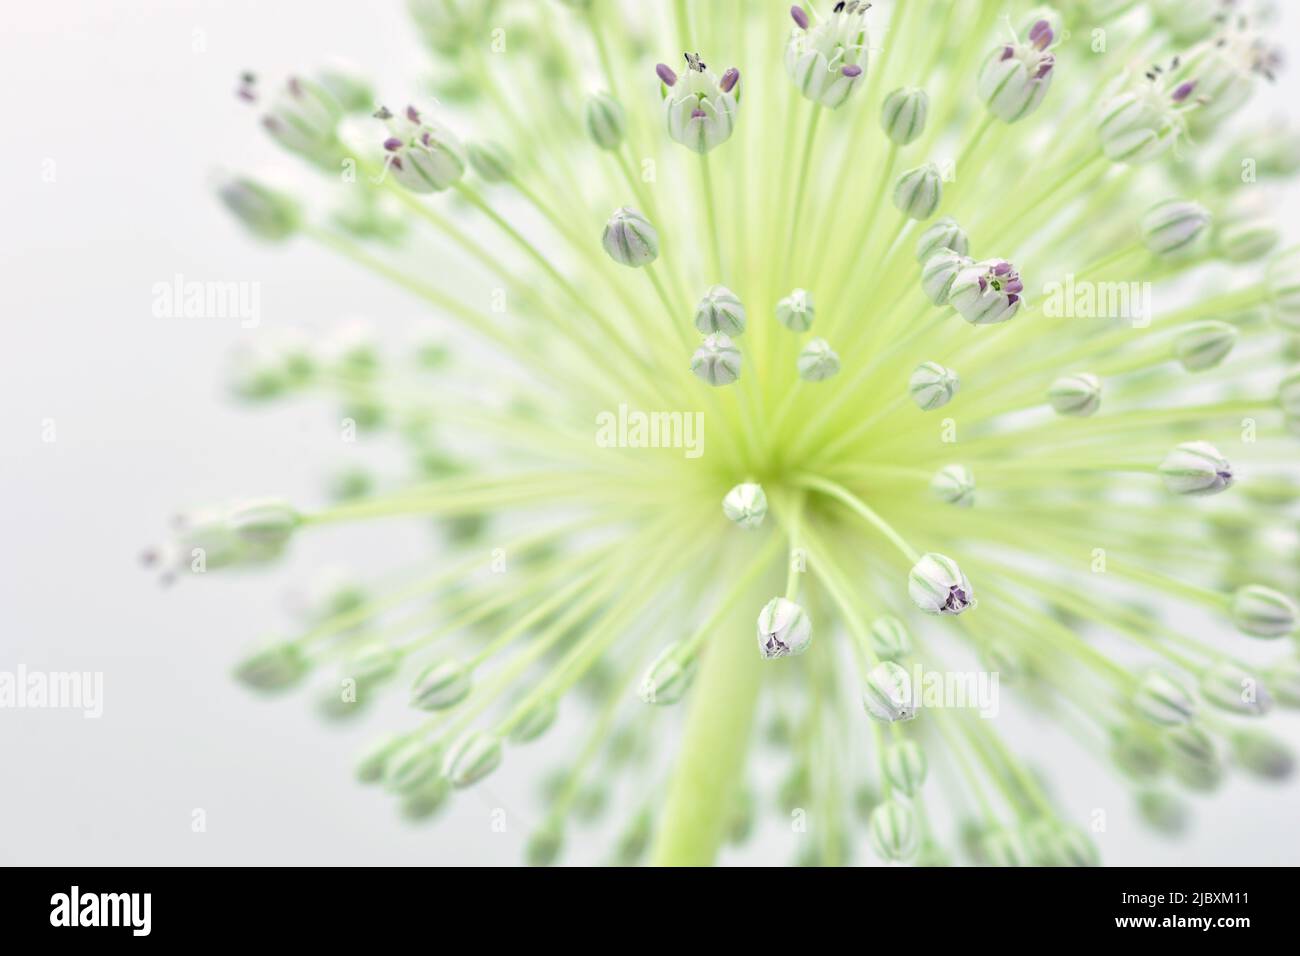 Detalle de la flor del ajo puerro, Allium ampeloprasum, aislado en blanco Stock Photo